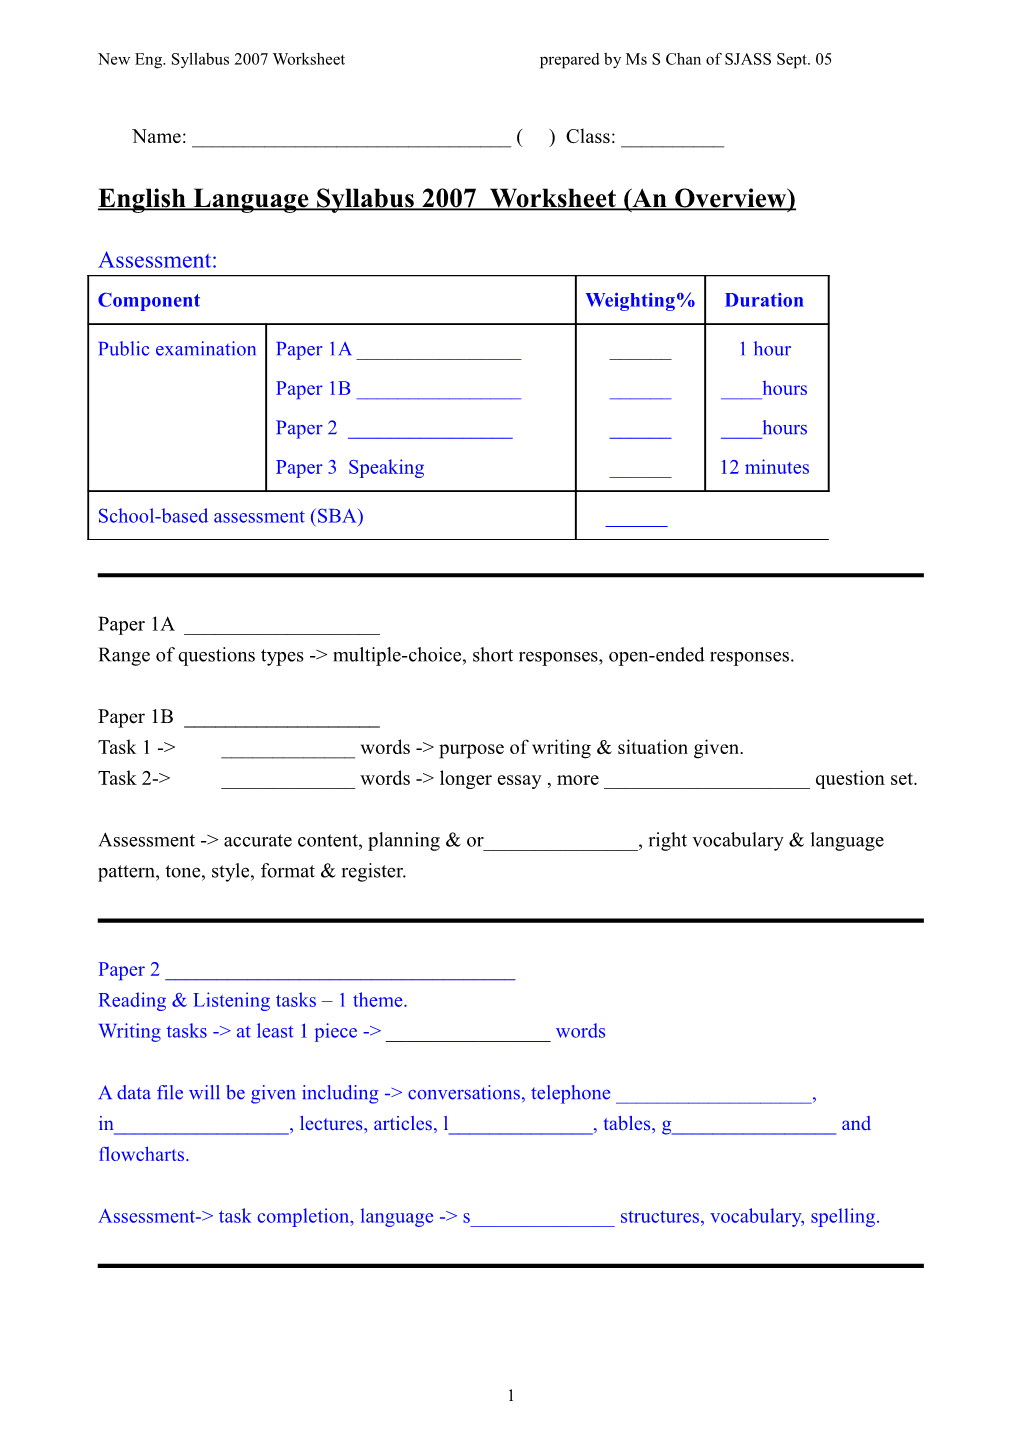 English Language Syllabus 2007 Worksheet (An Overview)